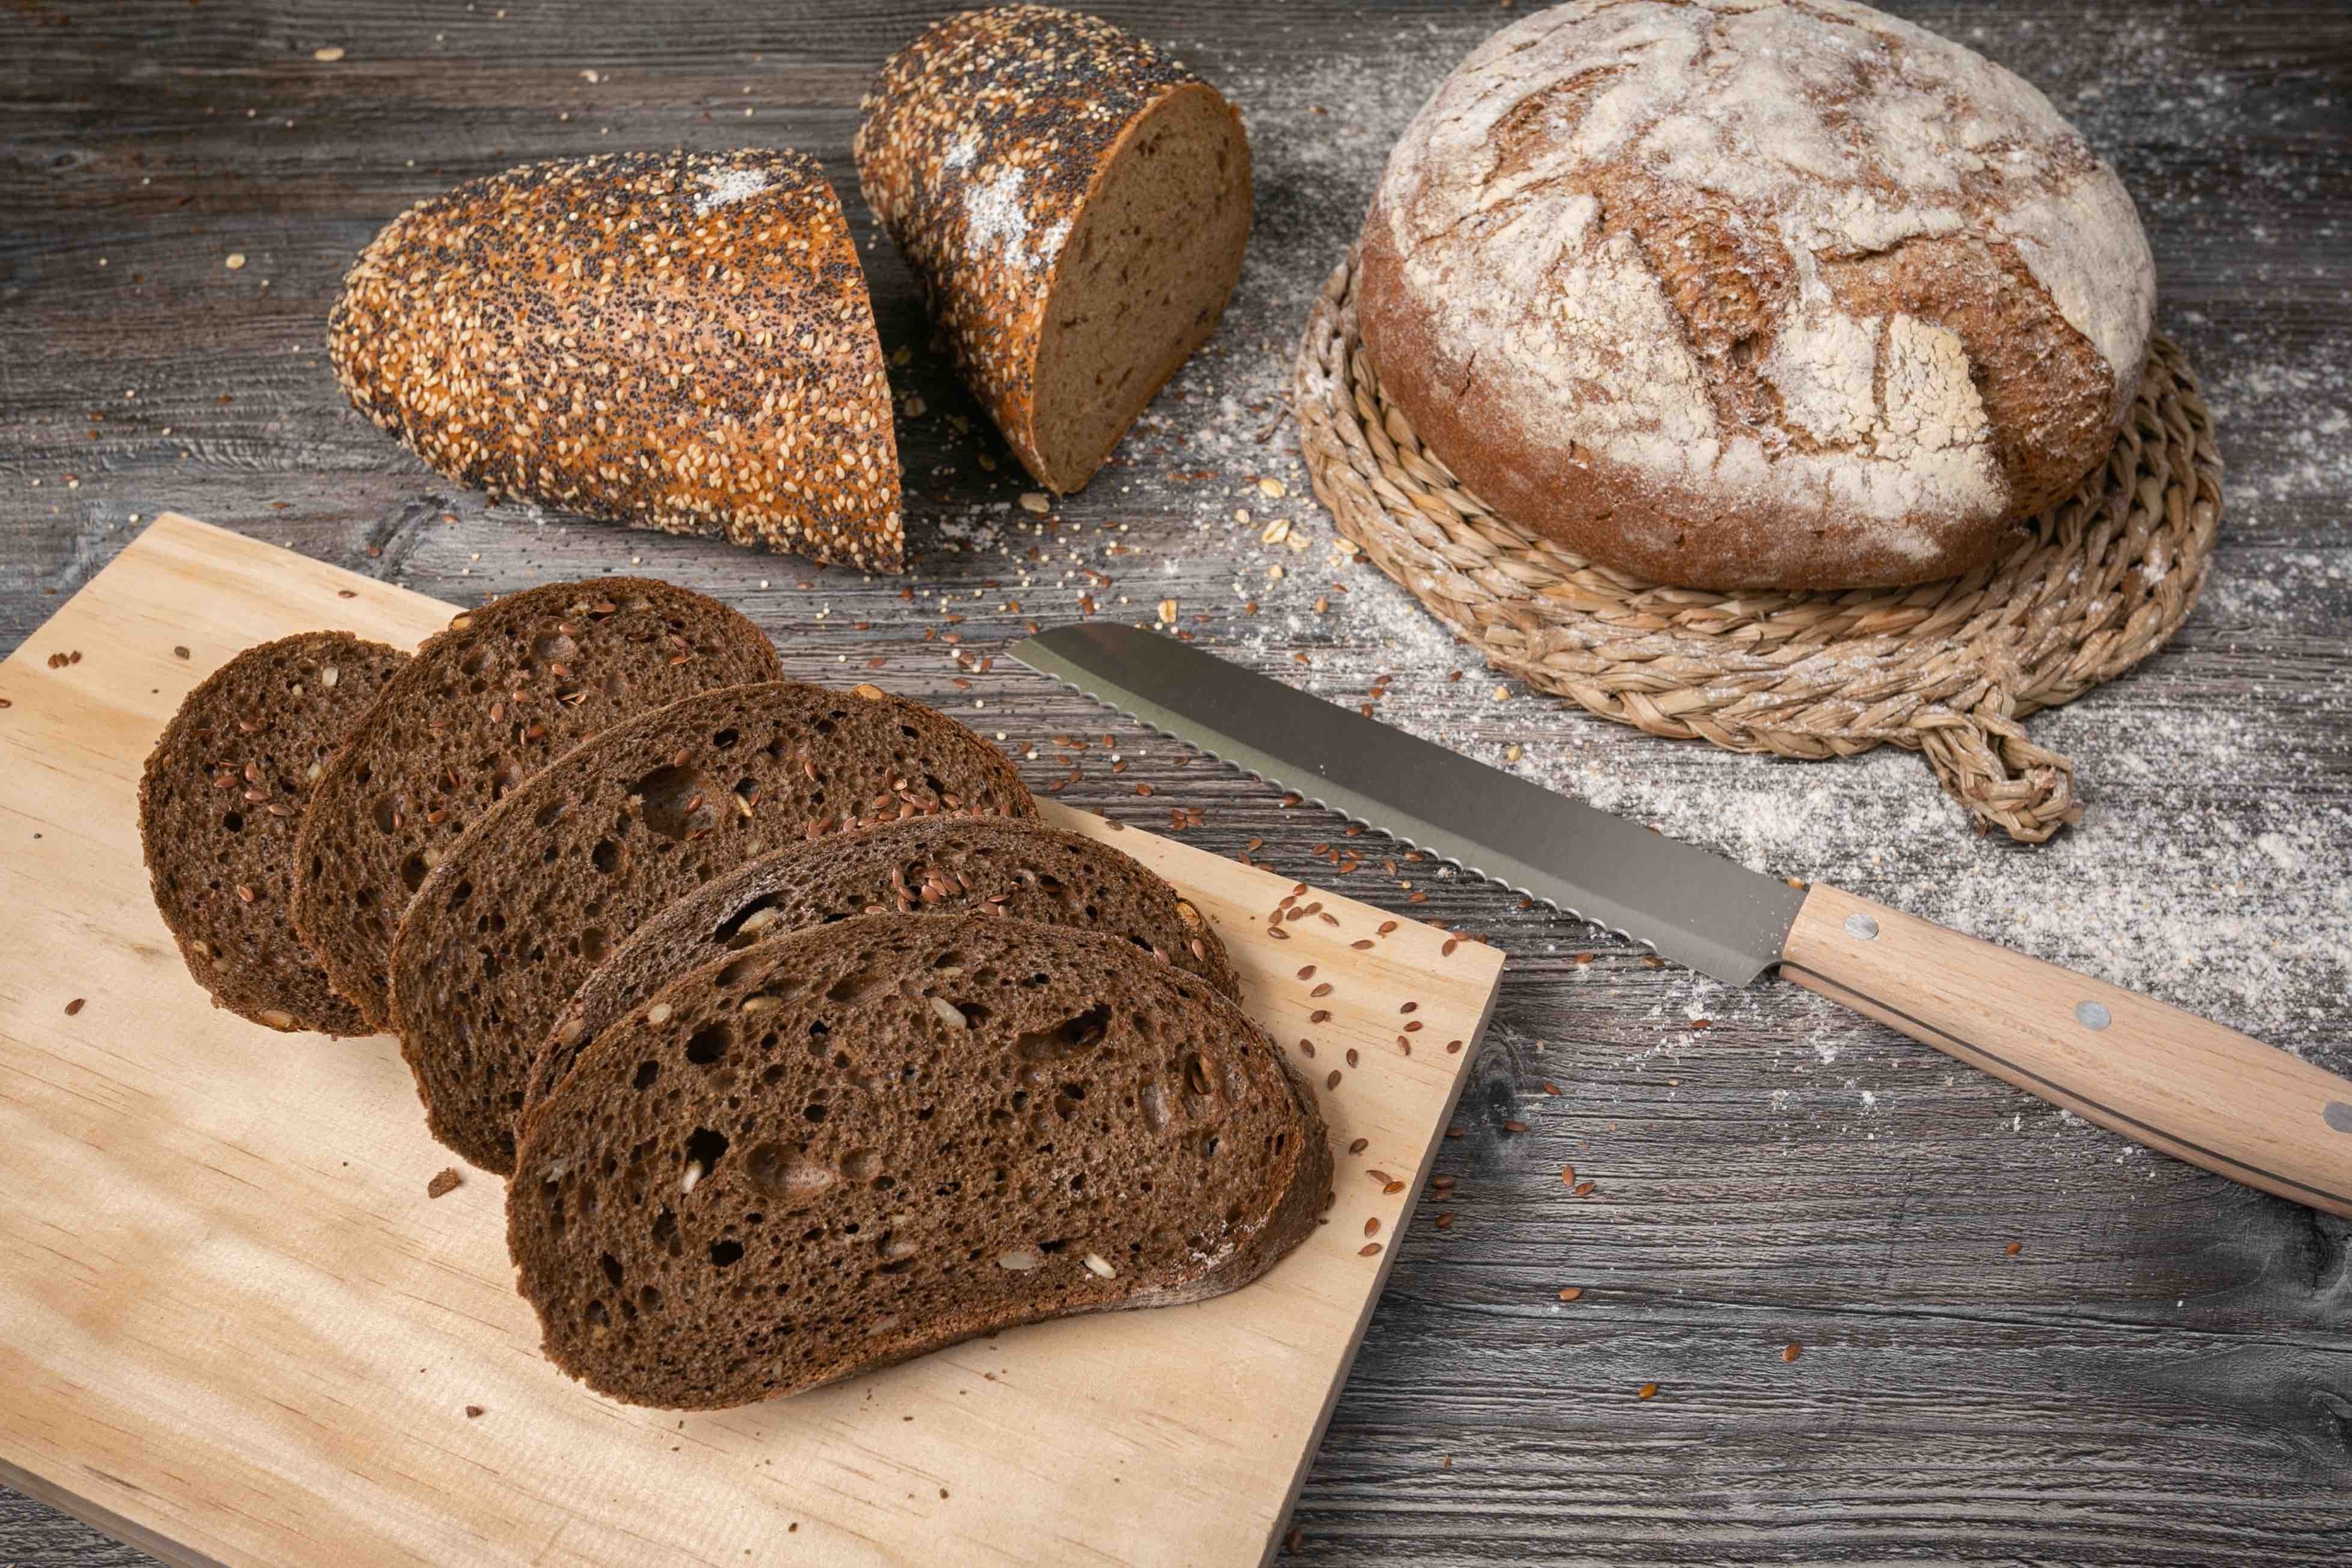 Professional FOOD & BEVERAGE photographer for Ketterer Pan Aleman - German Bread 1